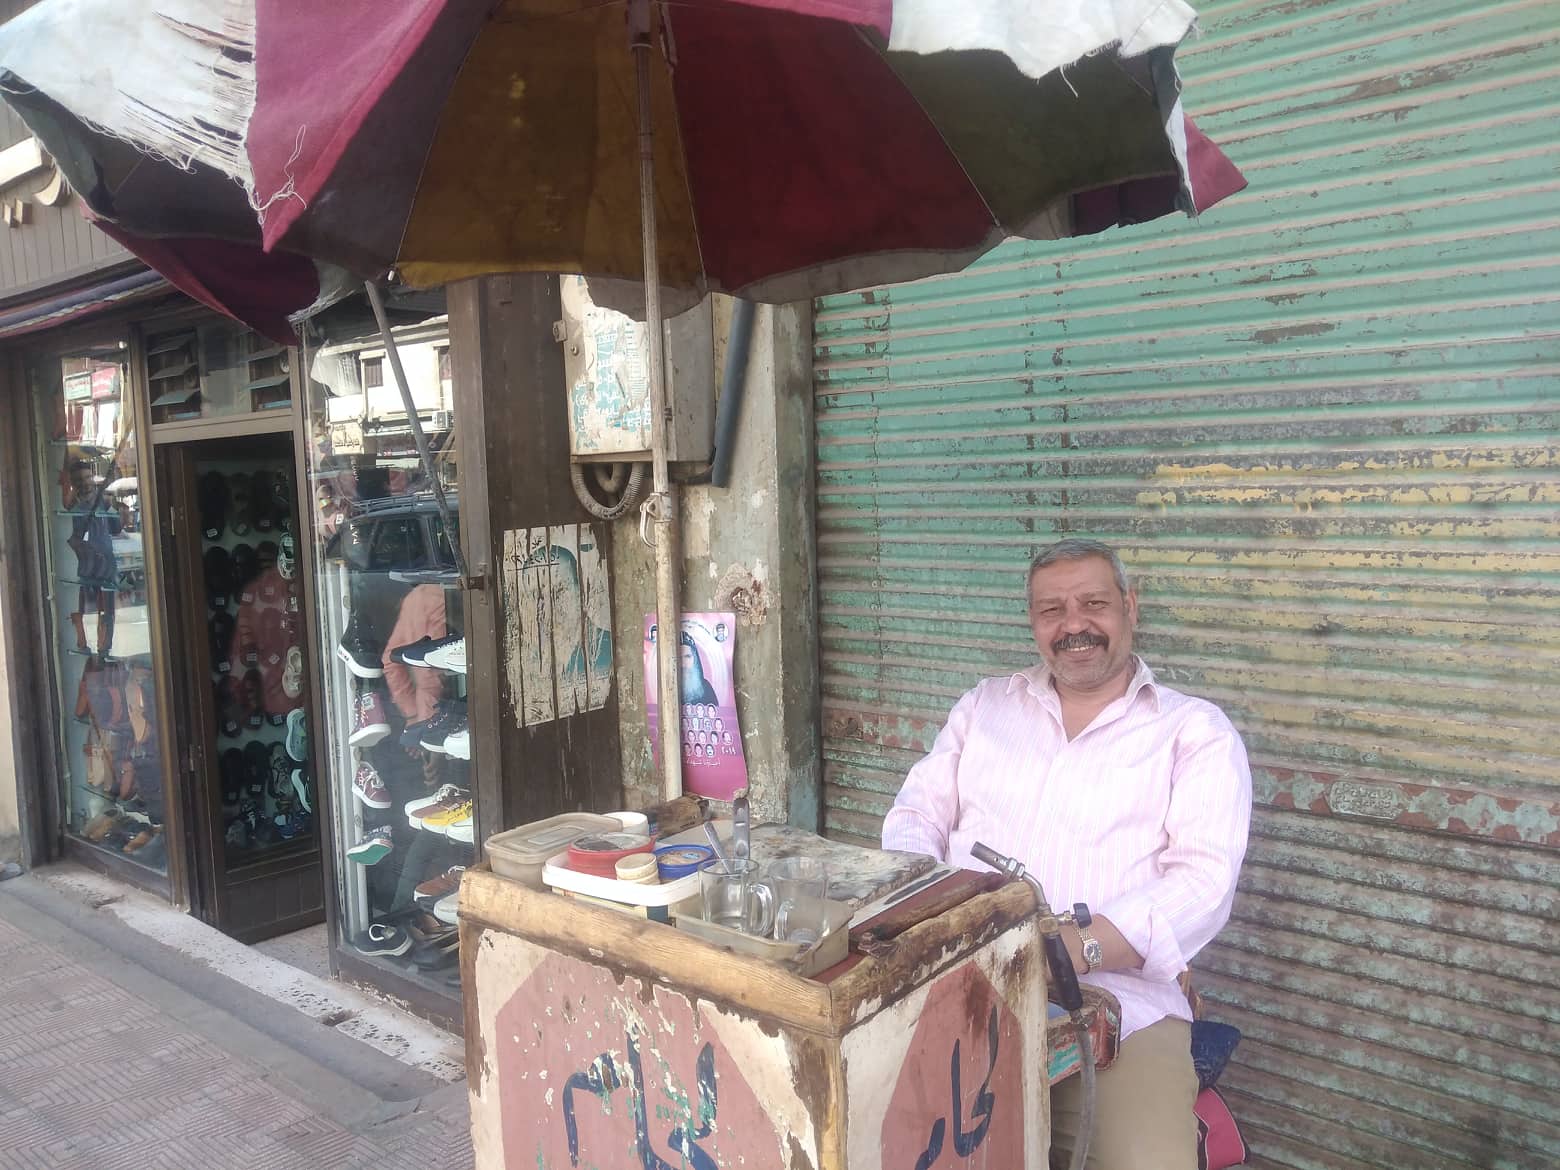 عماد نادر يعمل في صنعة لحام الذهب من 35 عاما بقنا